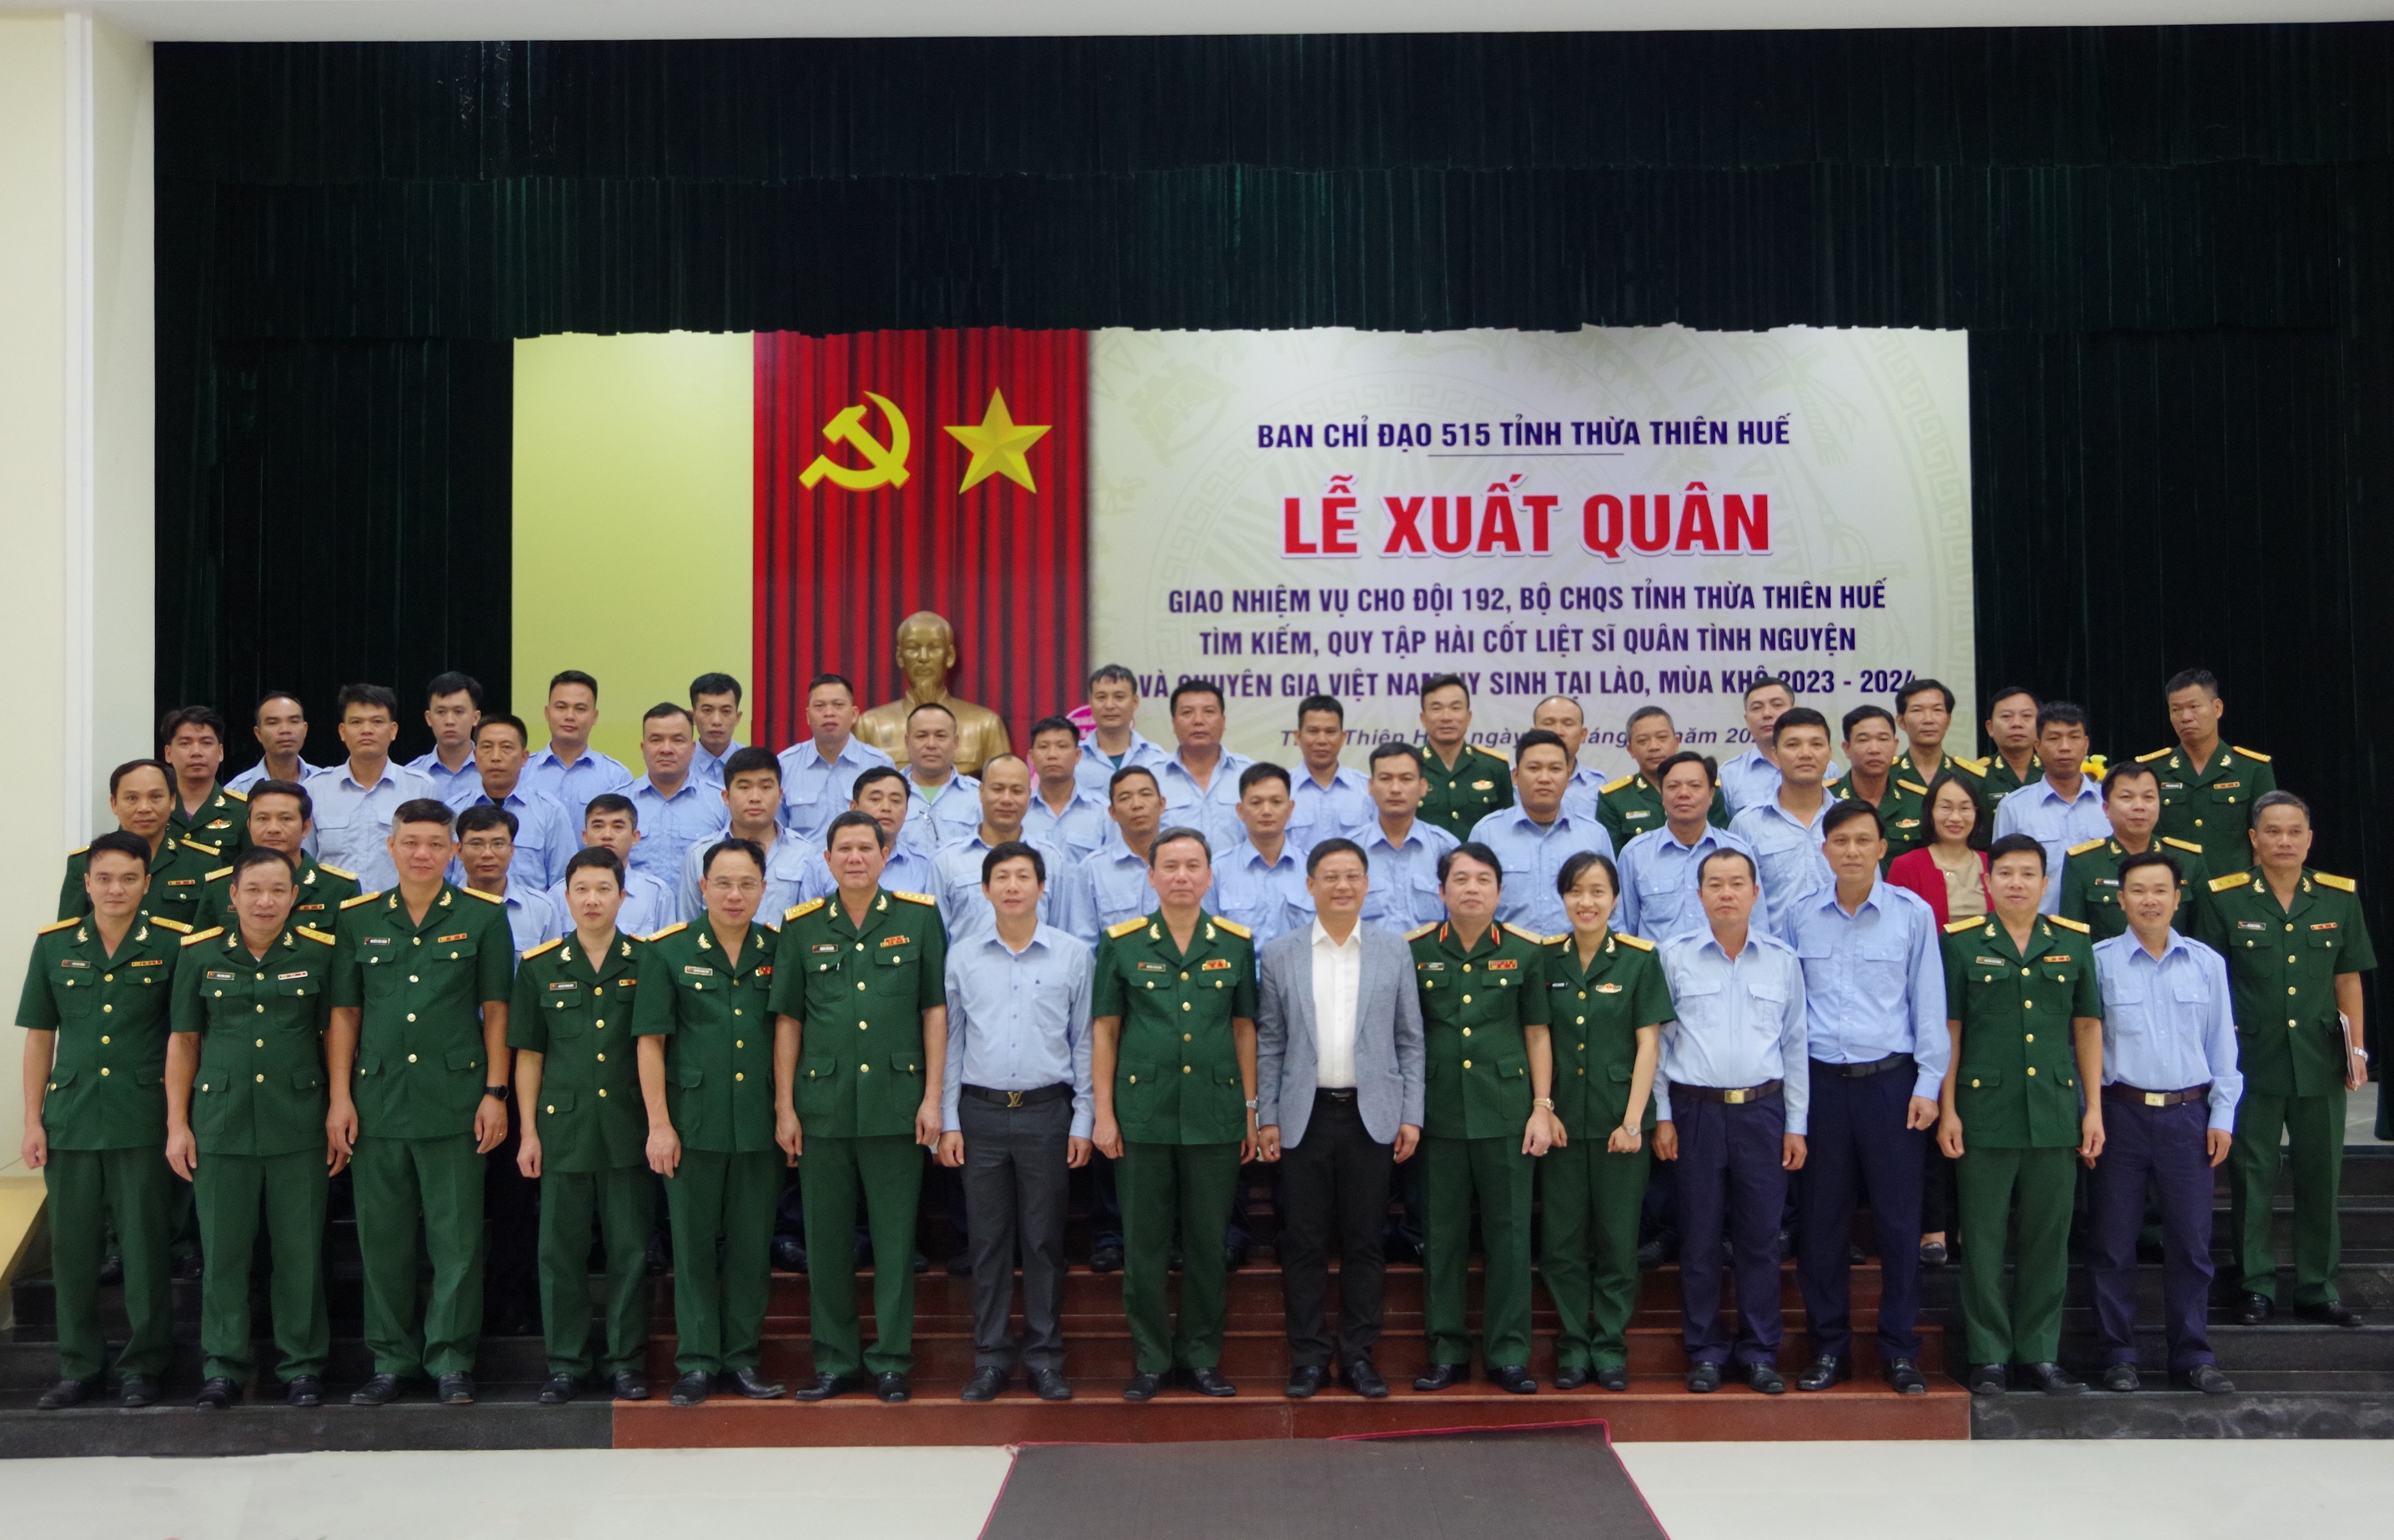 Đội quy tập 192 tỉnh TT-Huế xuất quân sang Lào tìm kiếm, quy tập hài cốt liệt sĩ